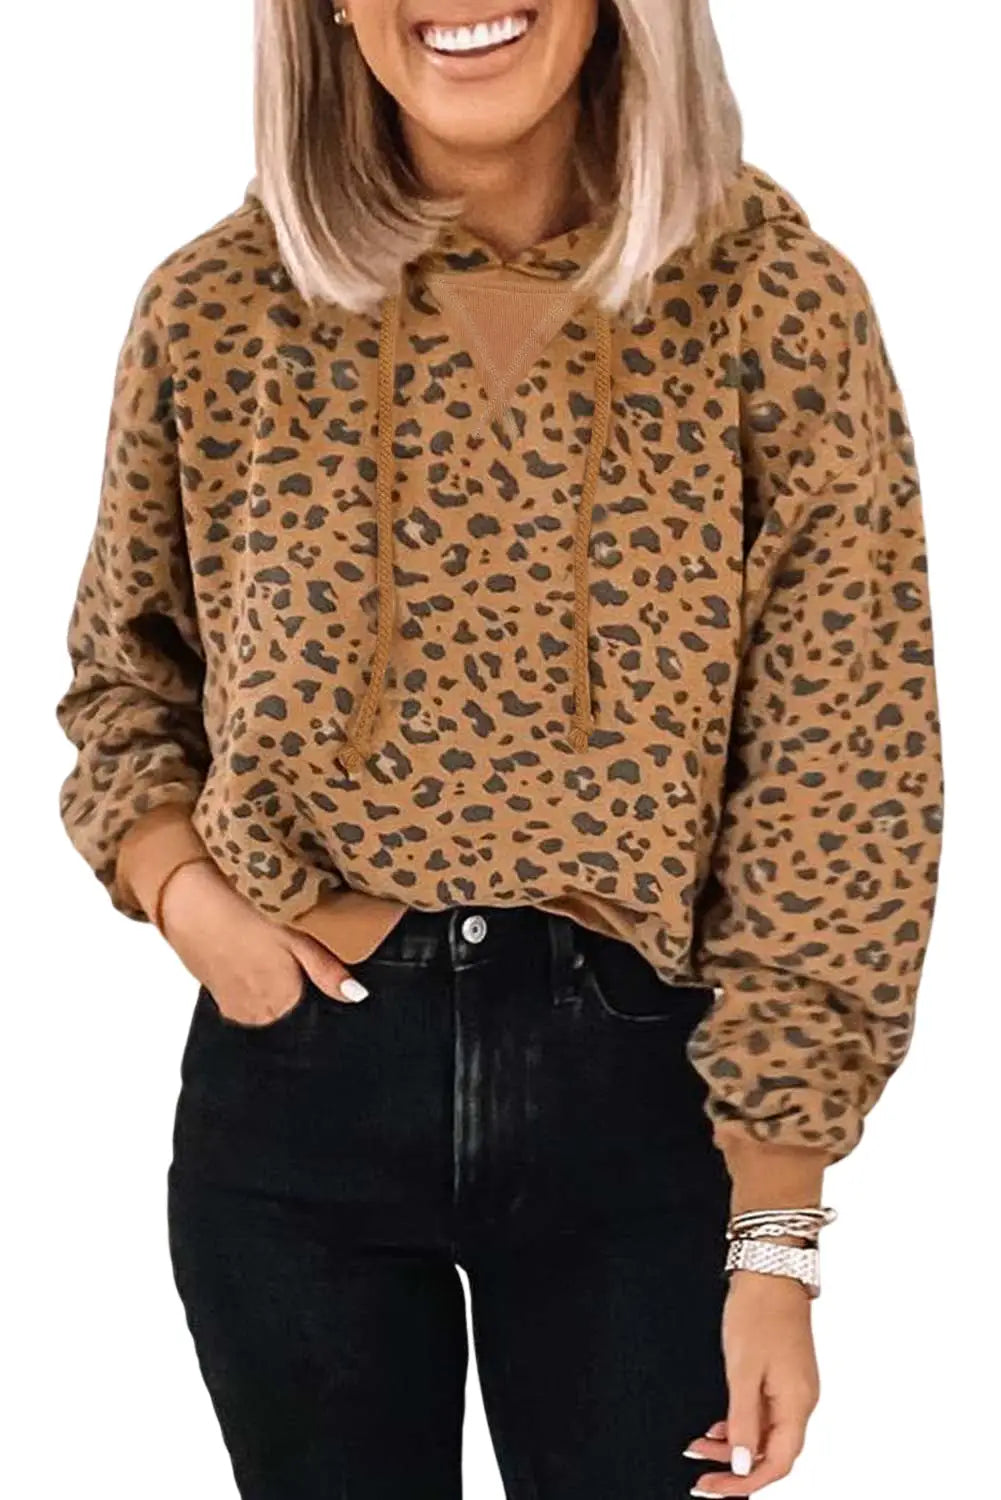 Leopard long sleeve drawstring cropped hoodie - sweatshirts & hoodies